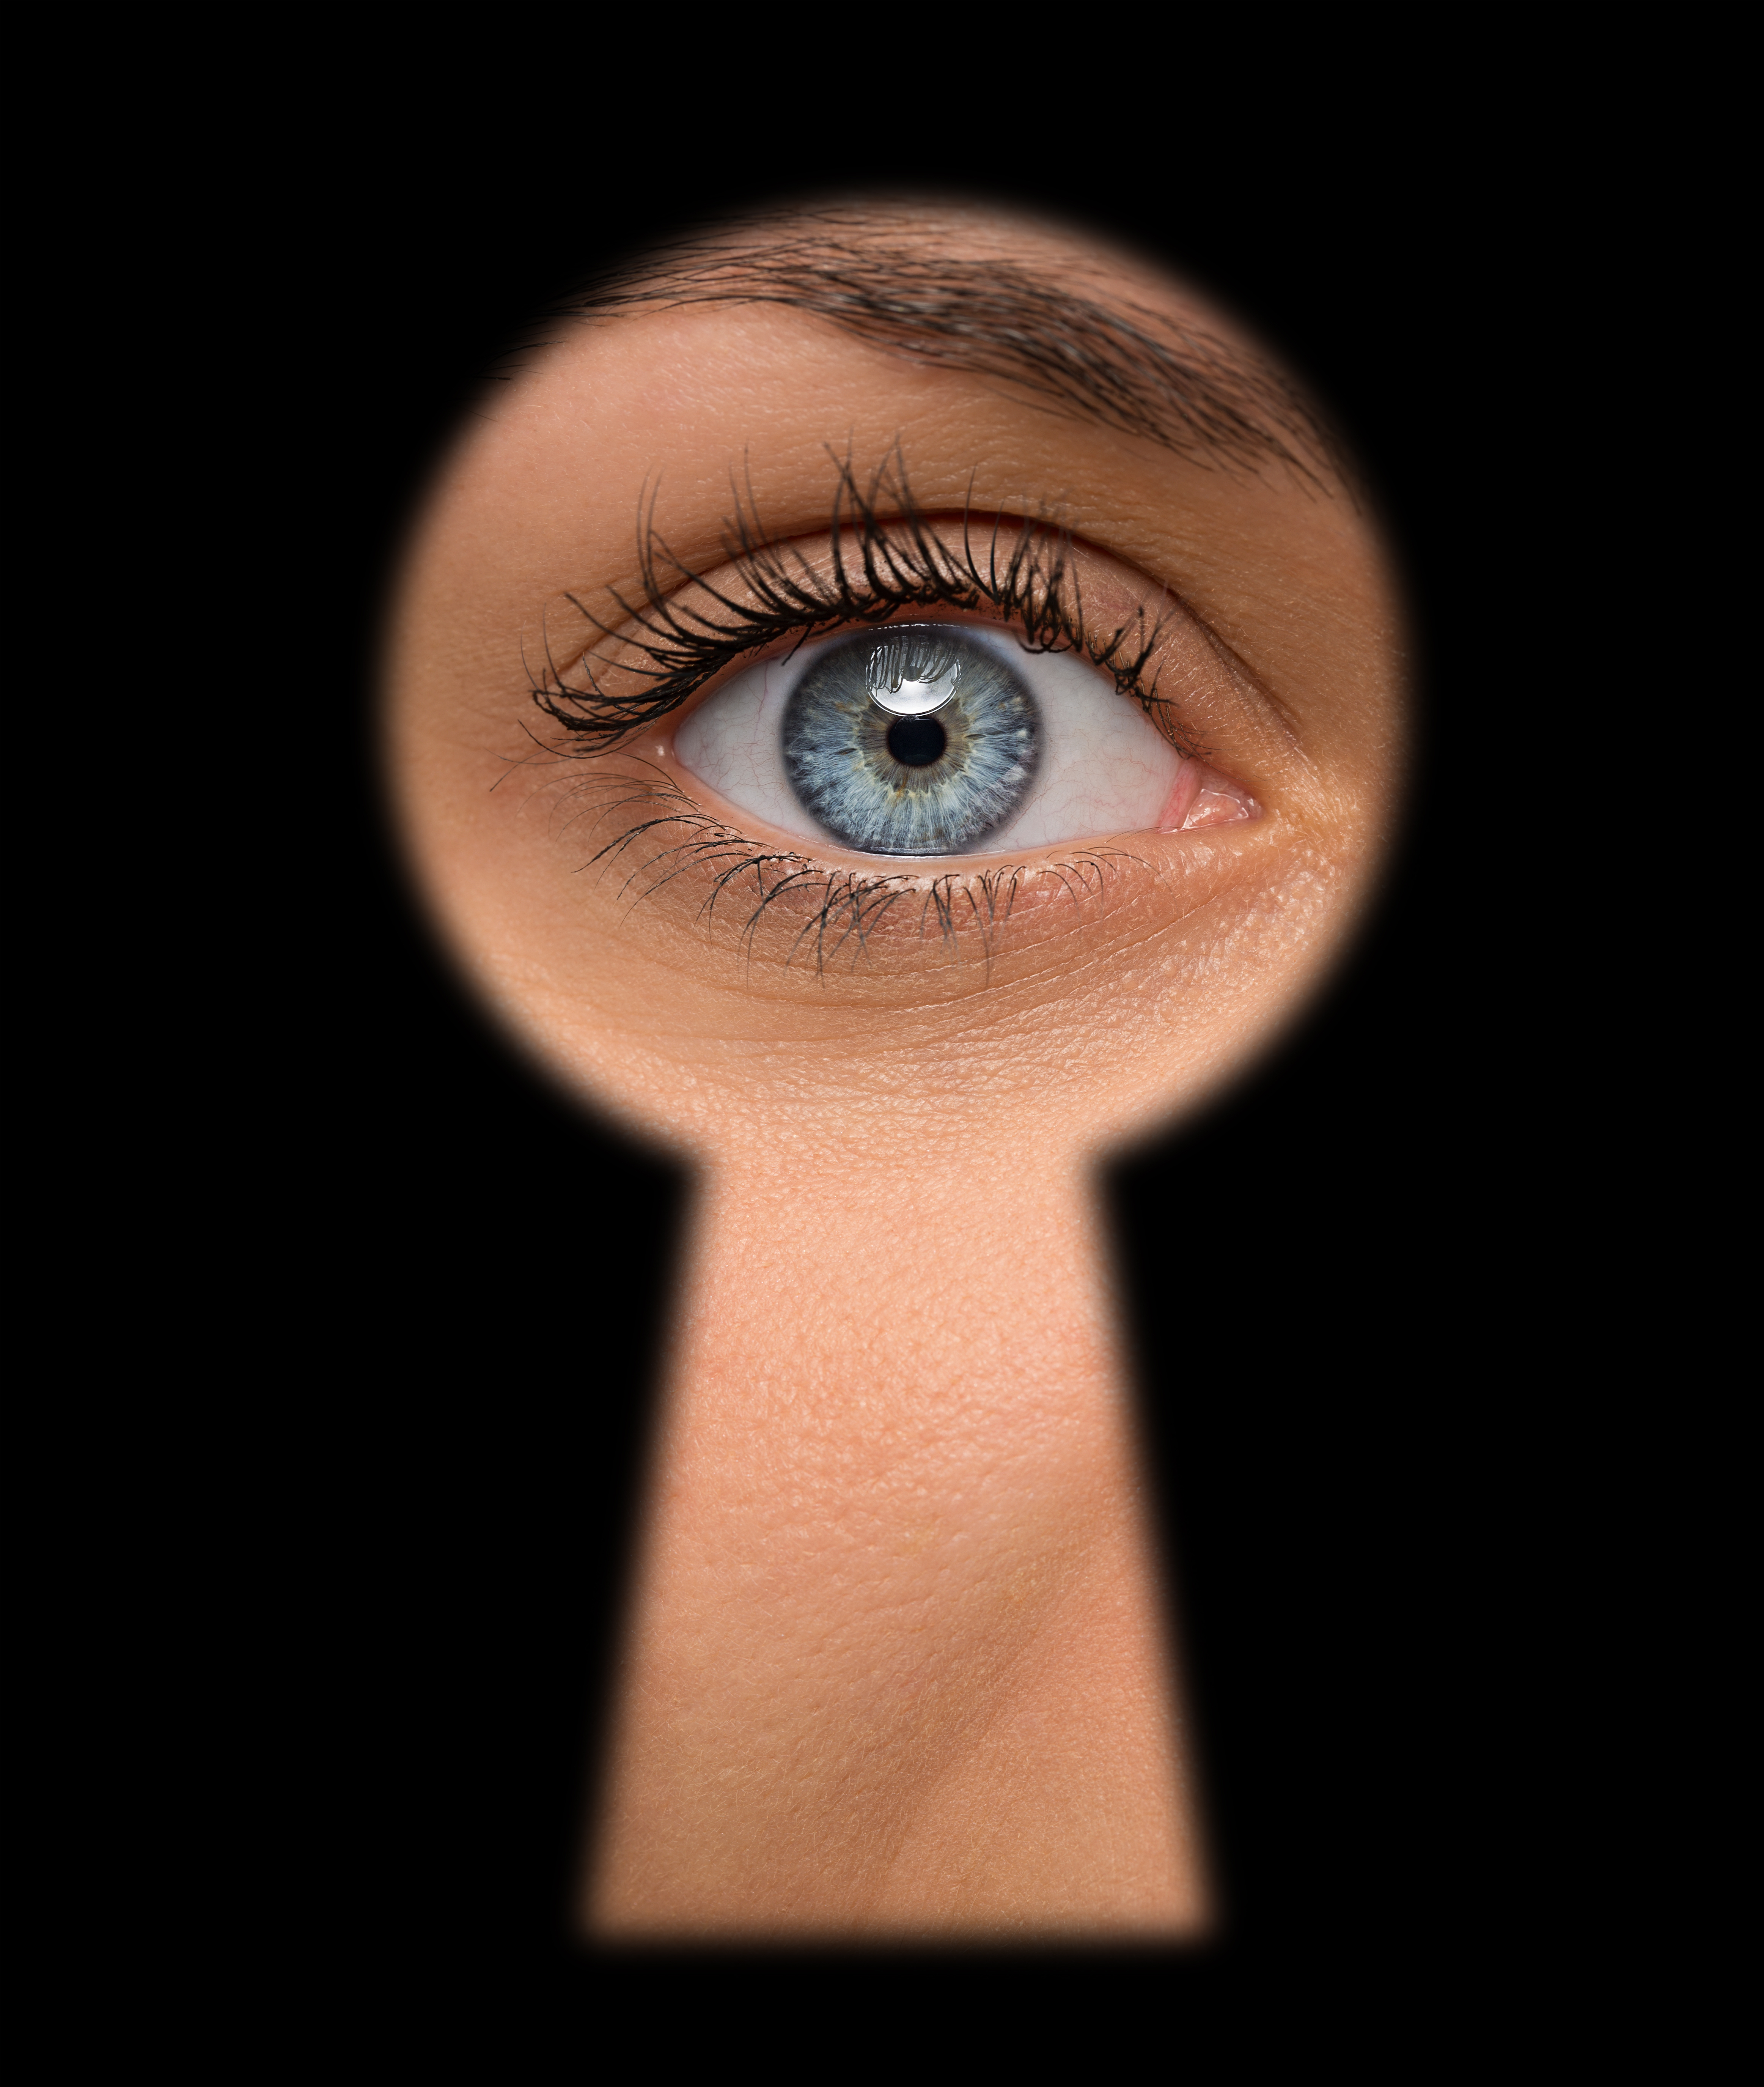 Une femme aux yeux bleus jette un coup d'œil à travers un trou de serrure | Source : Shutterstock